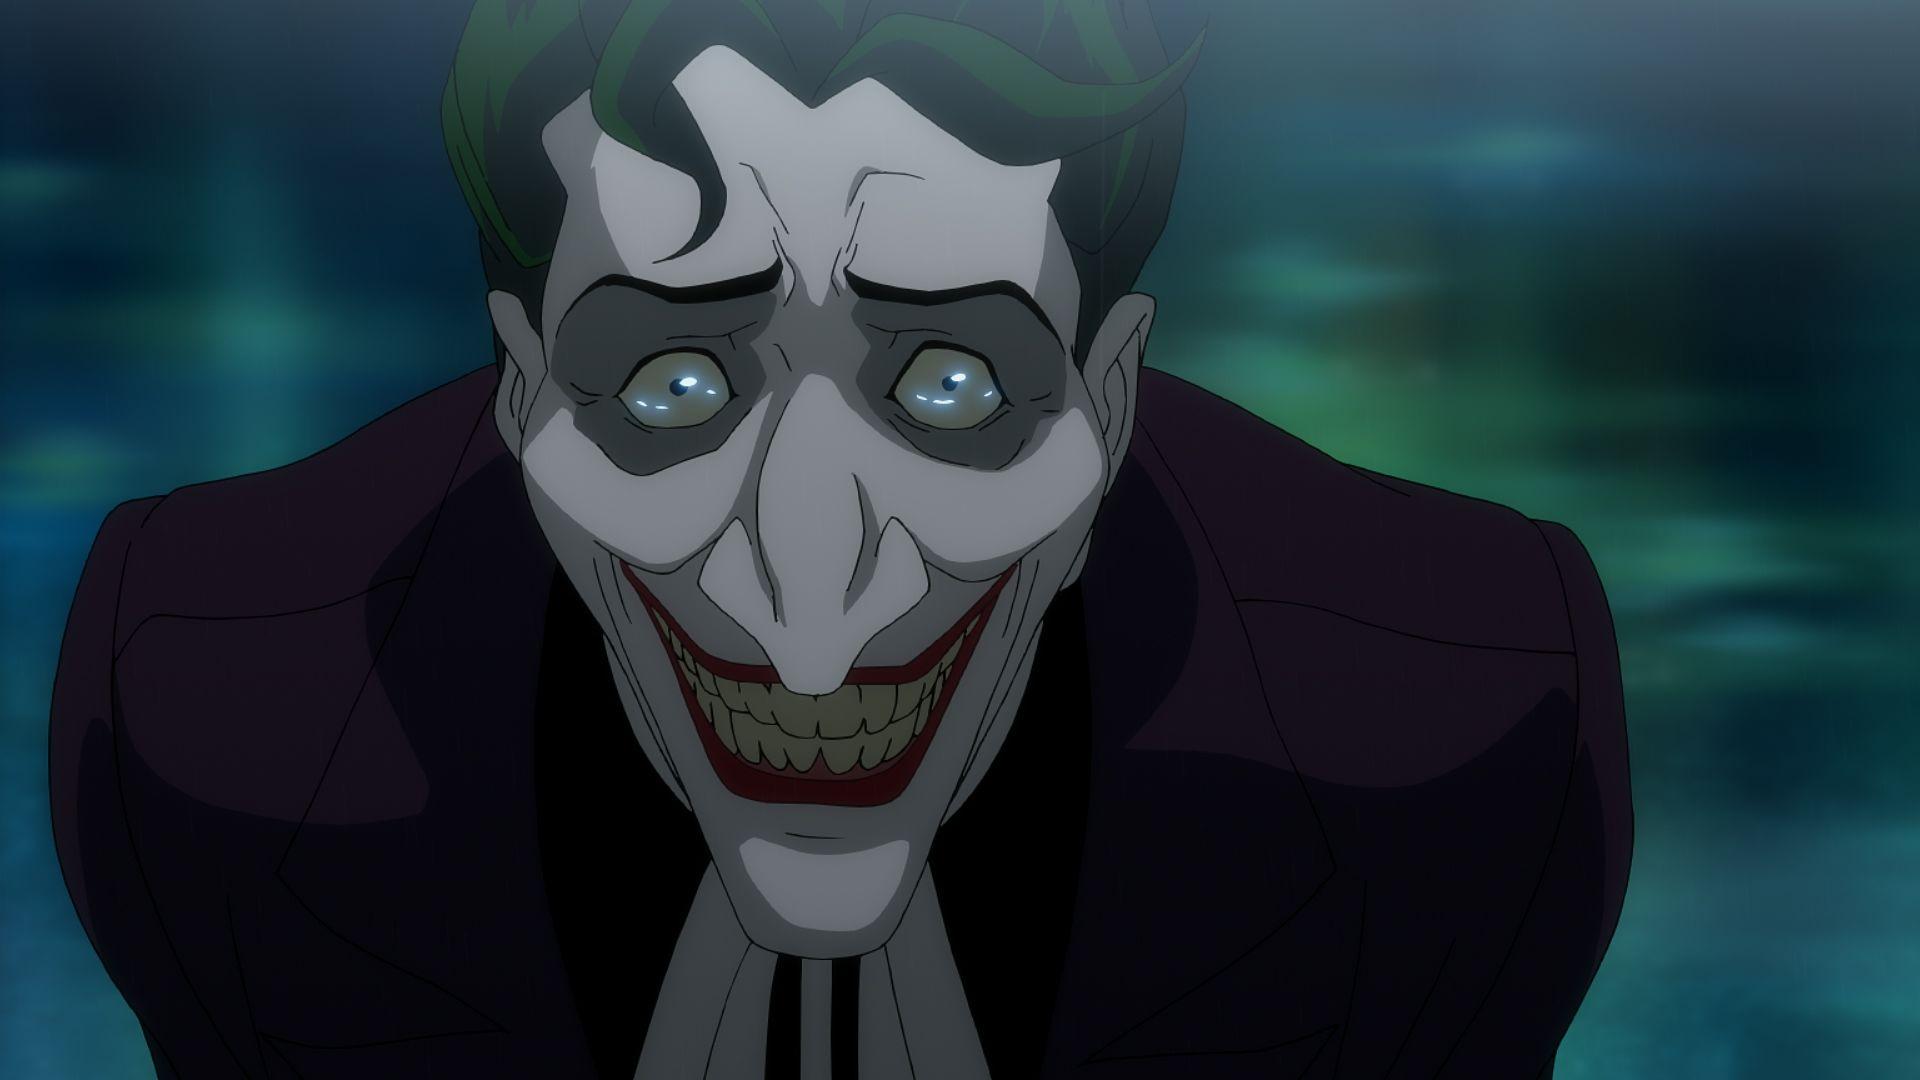  Joker  Killing  Joke  4K Ultra HD Wallpapers  Top Free Joker  